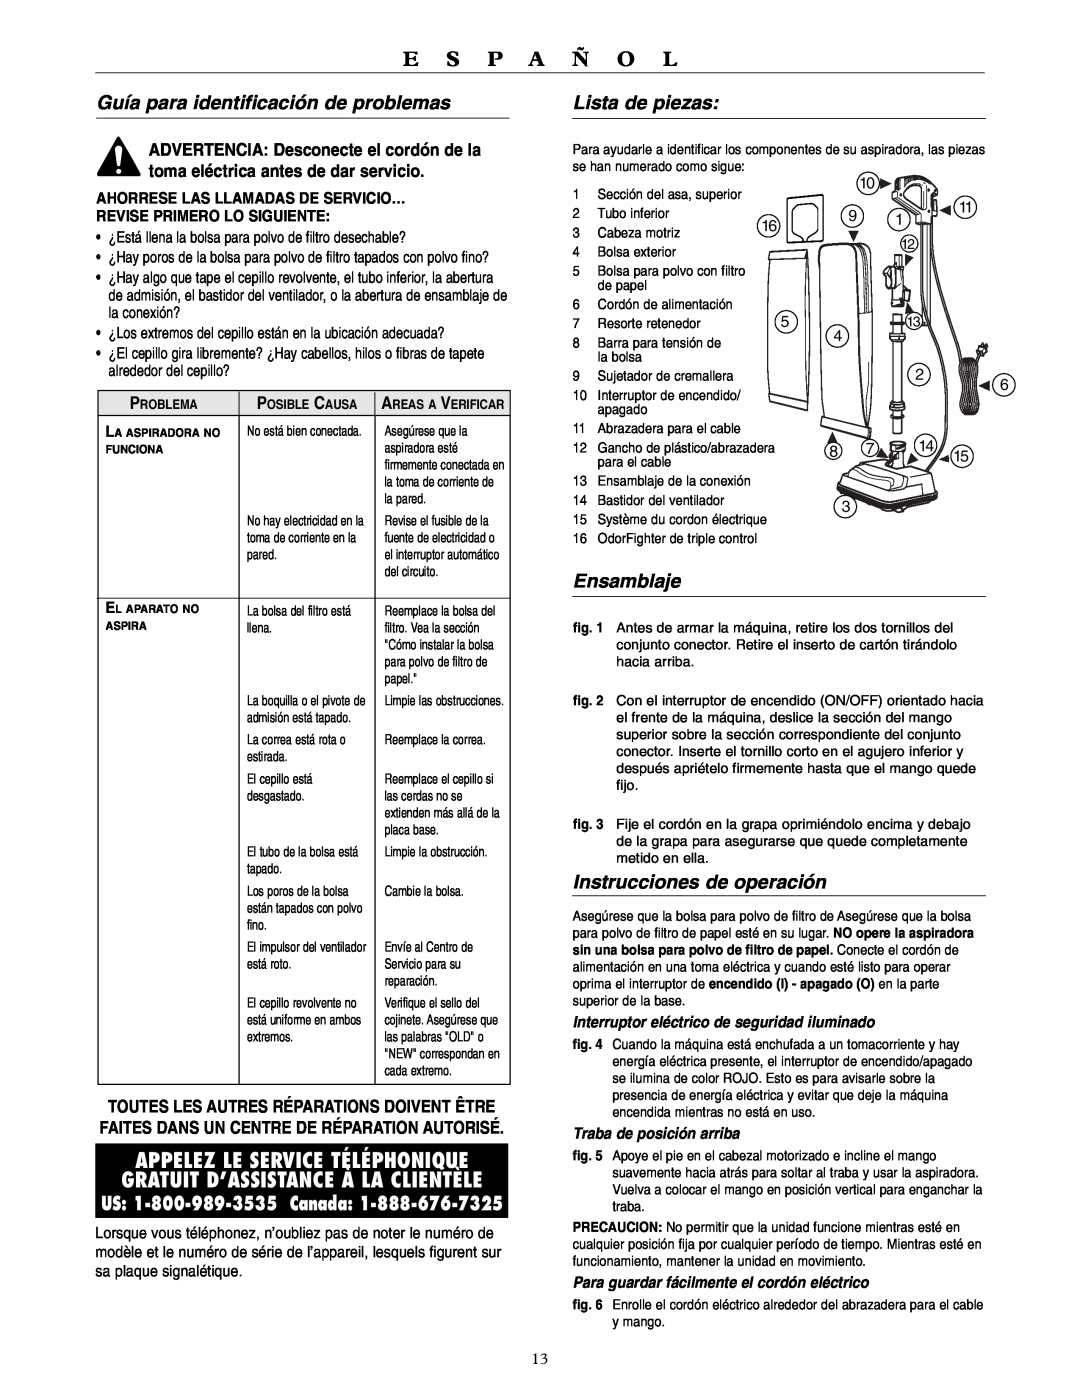 Oreck U3760HH warranty Guía para identificación de problemas, Lista de piezas, Ensamblaje, Instrucciones de operación 